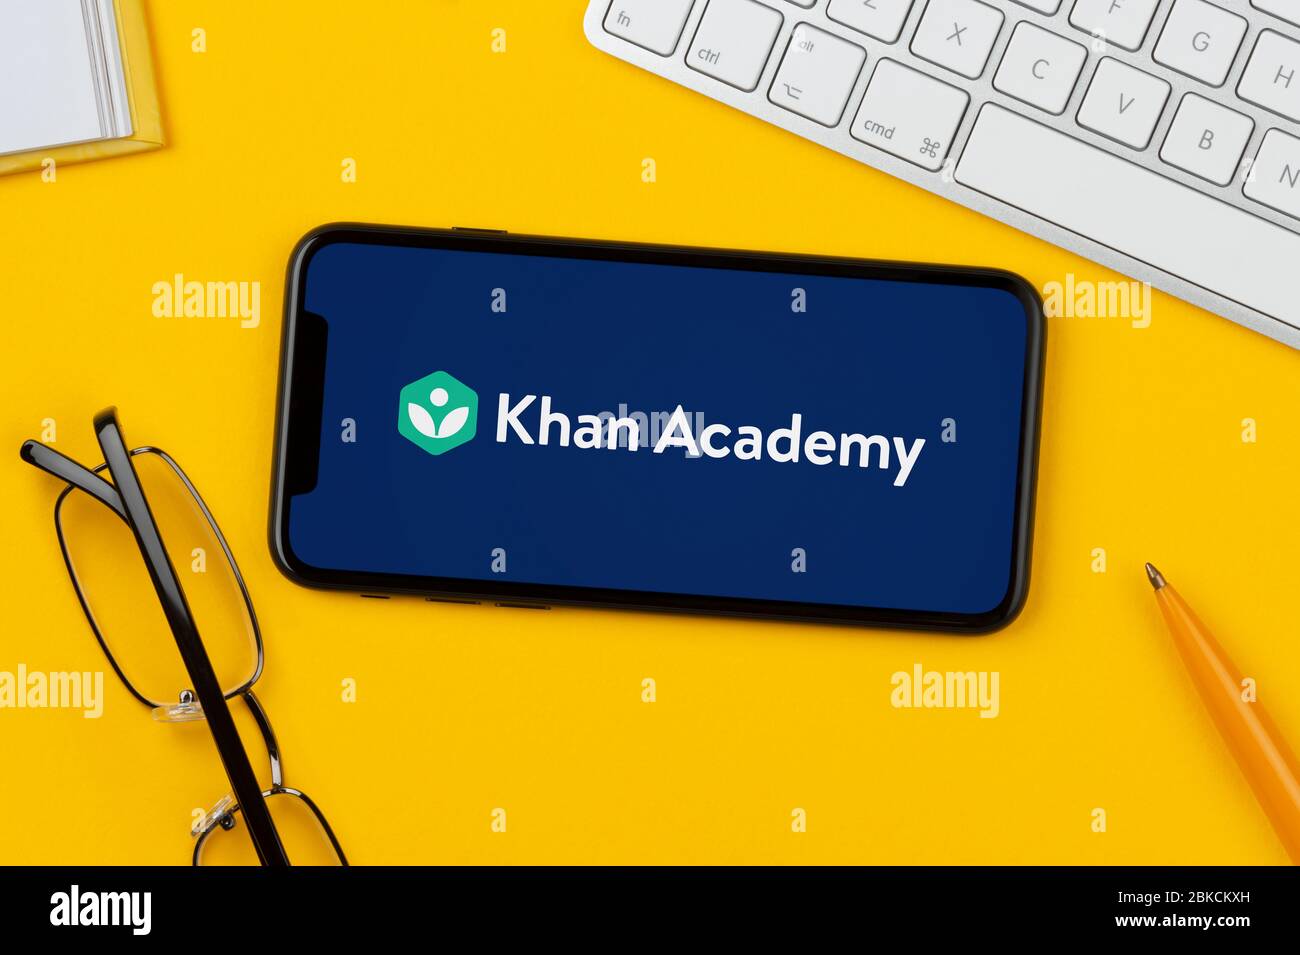 Ein Smartphone mit dem Khan Academy Logo liegt auf einem gelben Hintergrund zusammen mit Tastatur, Brille, Stift und Buch (nur für redaktionelle Verwendung). Stockfoto